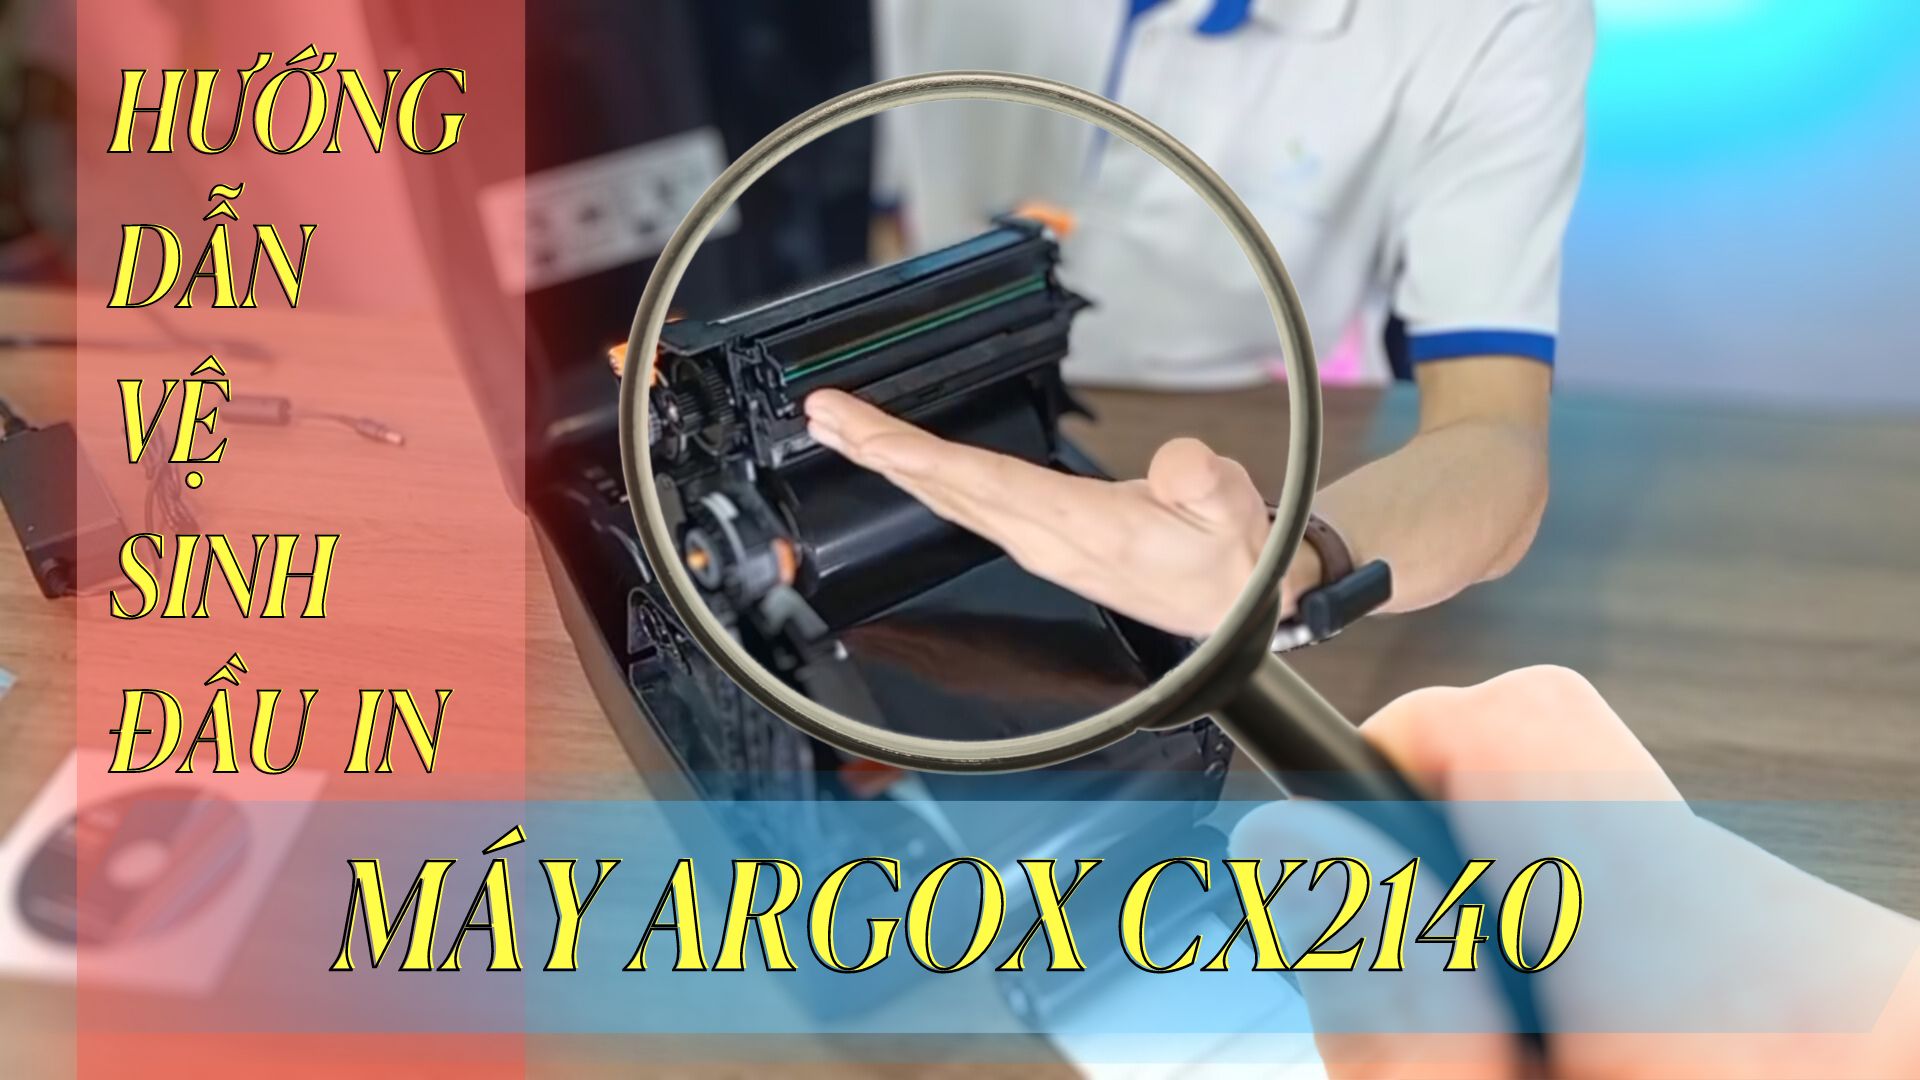 Hướng dẫn vệ sinh đầu in máy Argox CX-2140